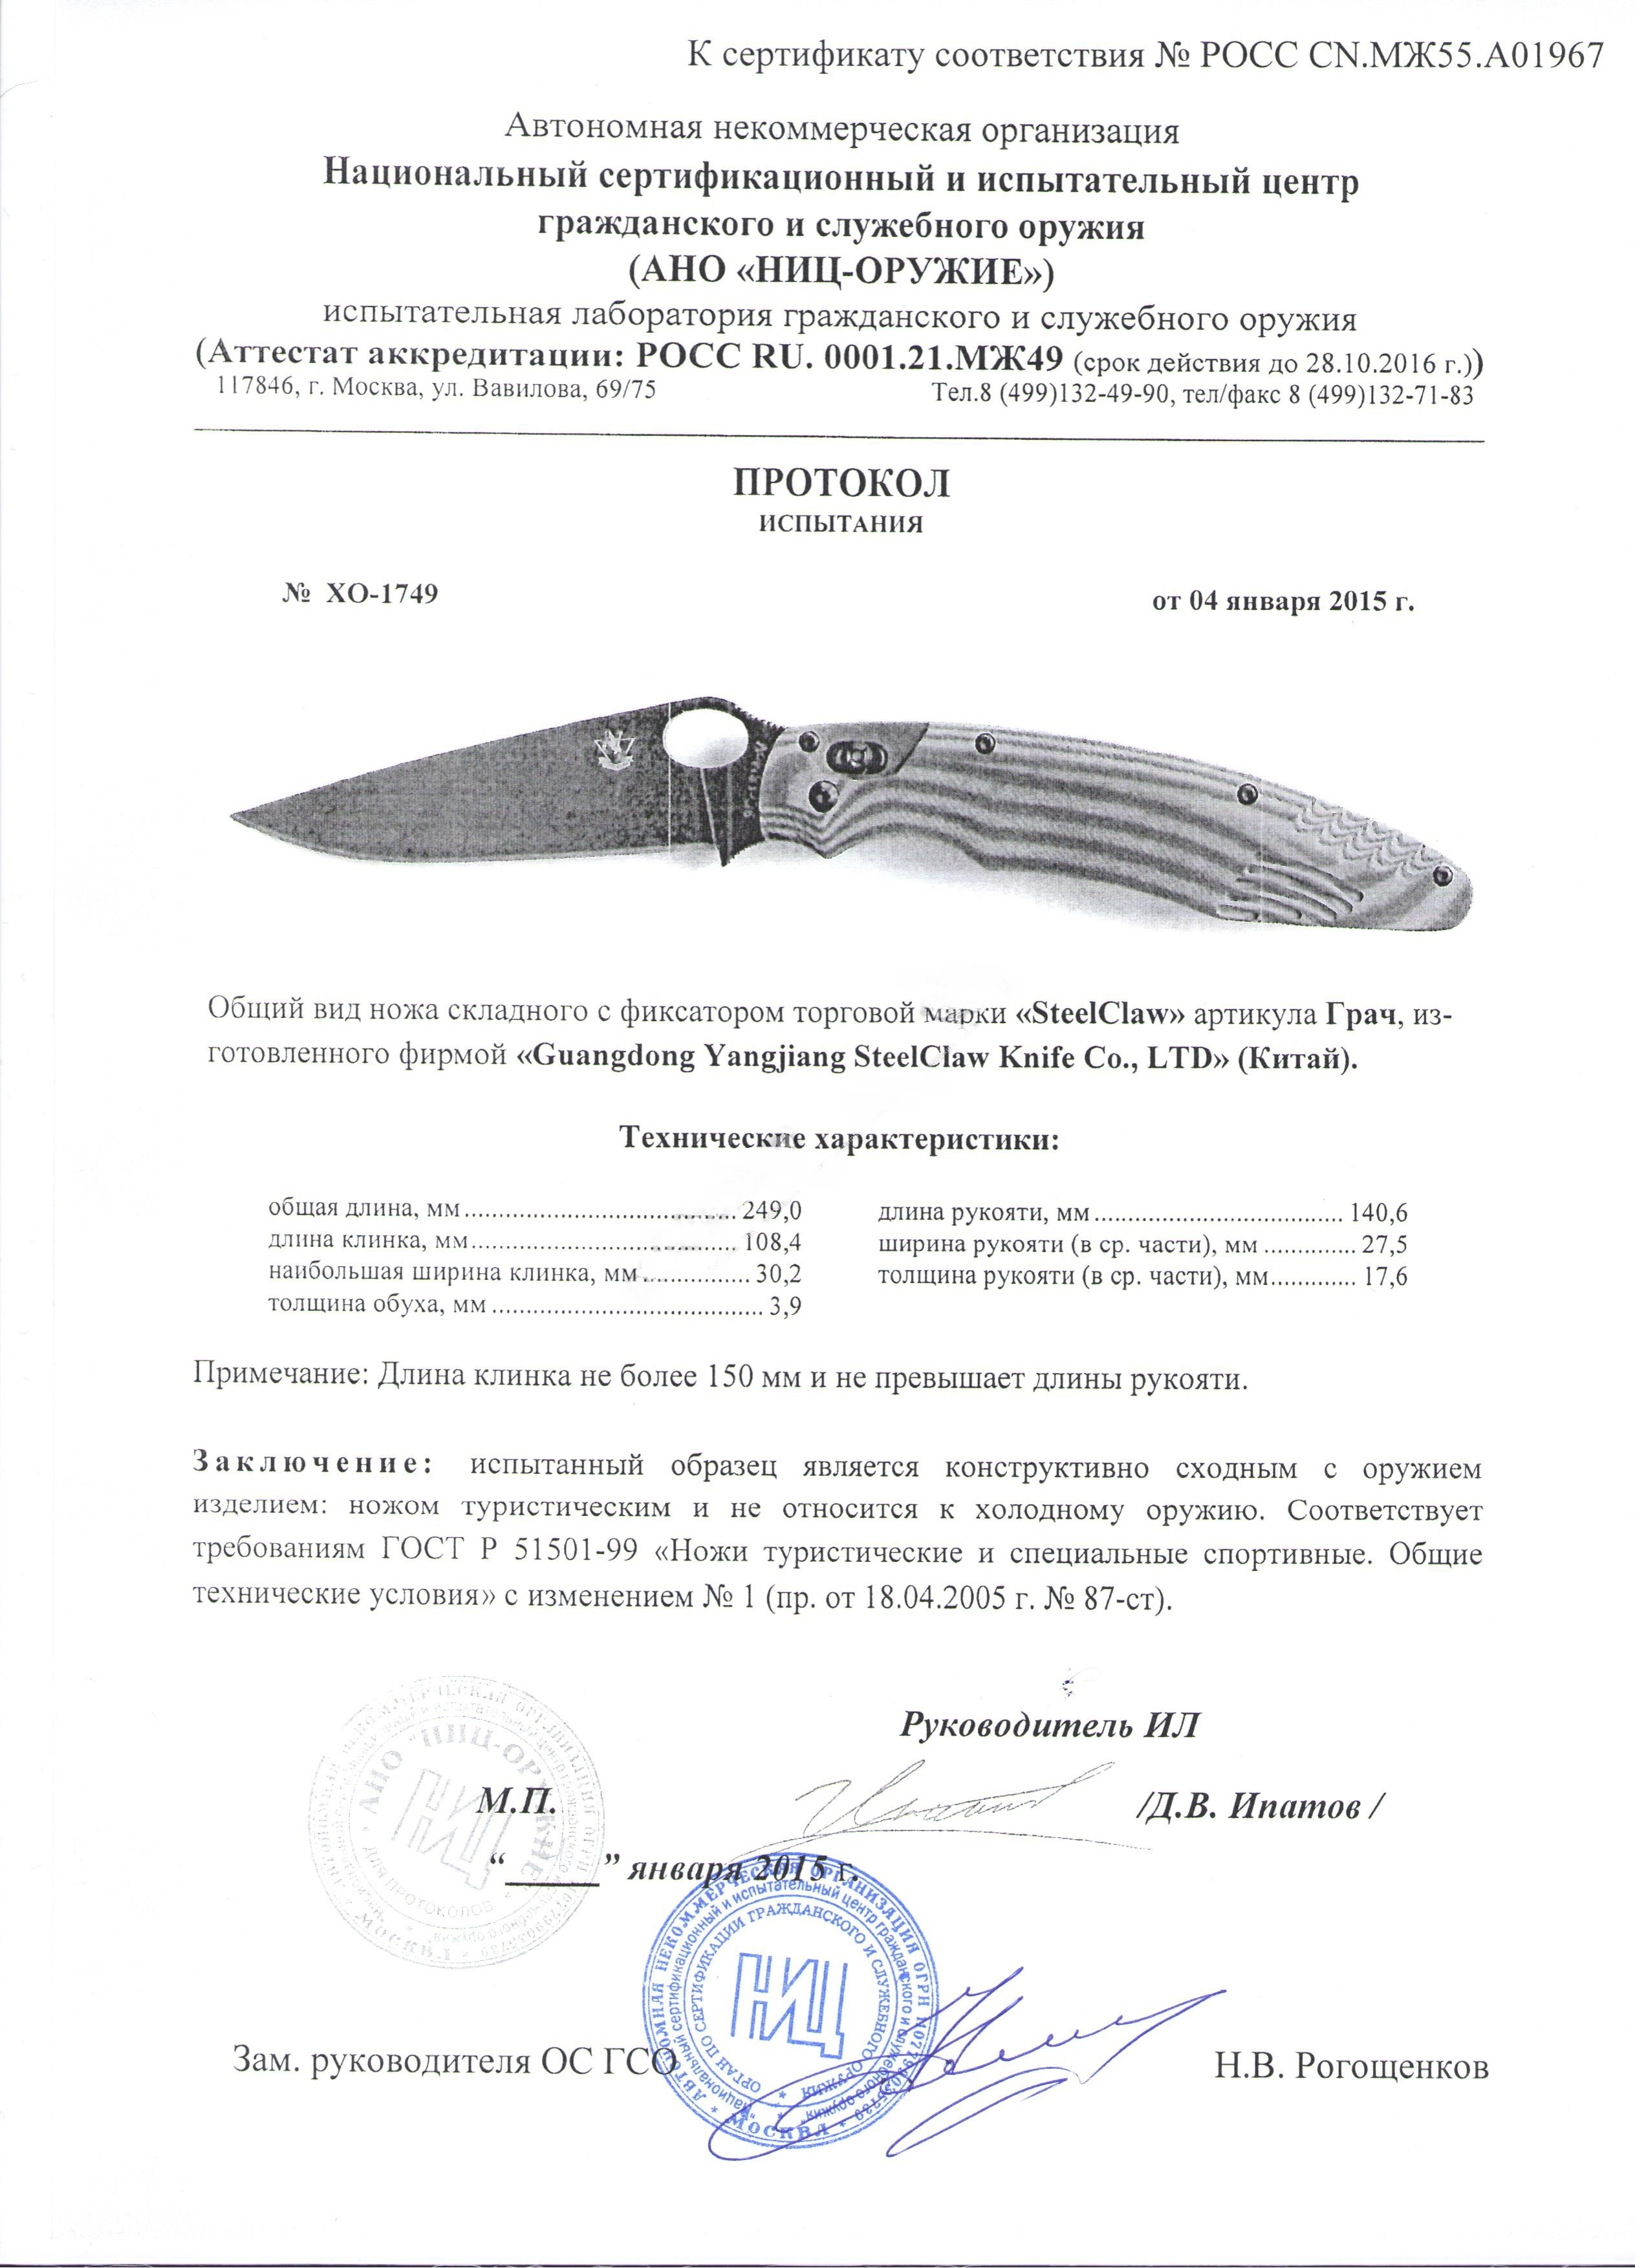 Сертификат ножа  Steelclaw Грач